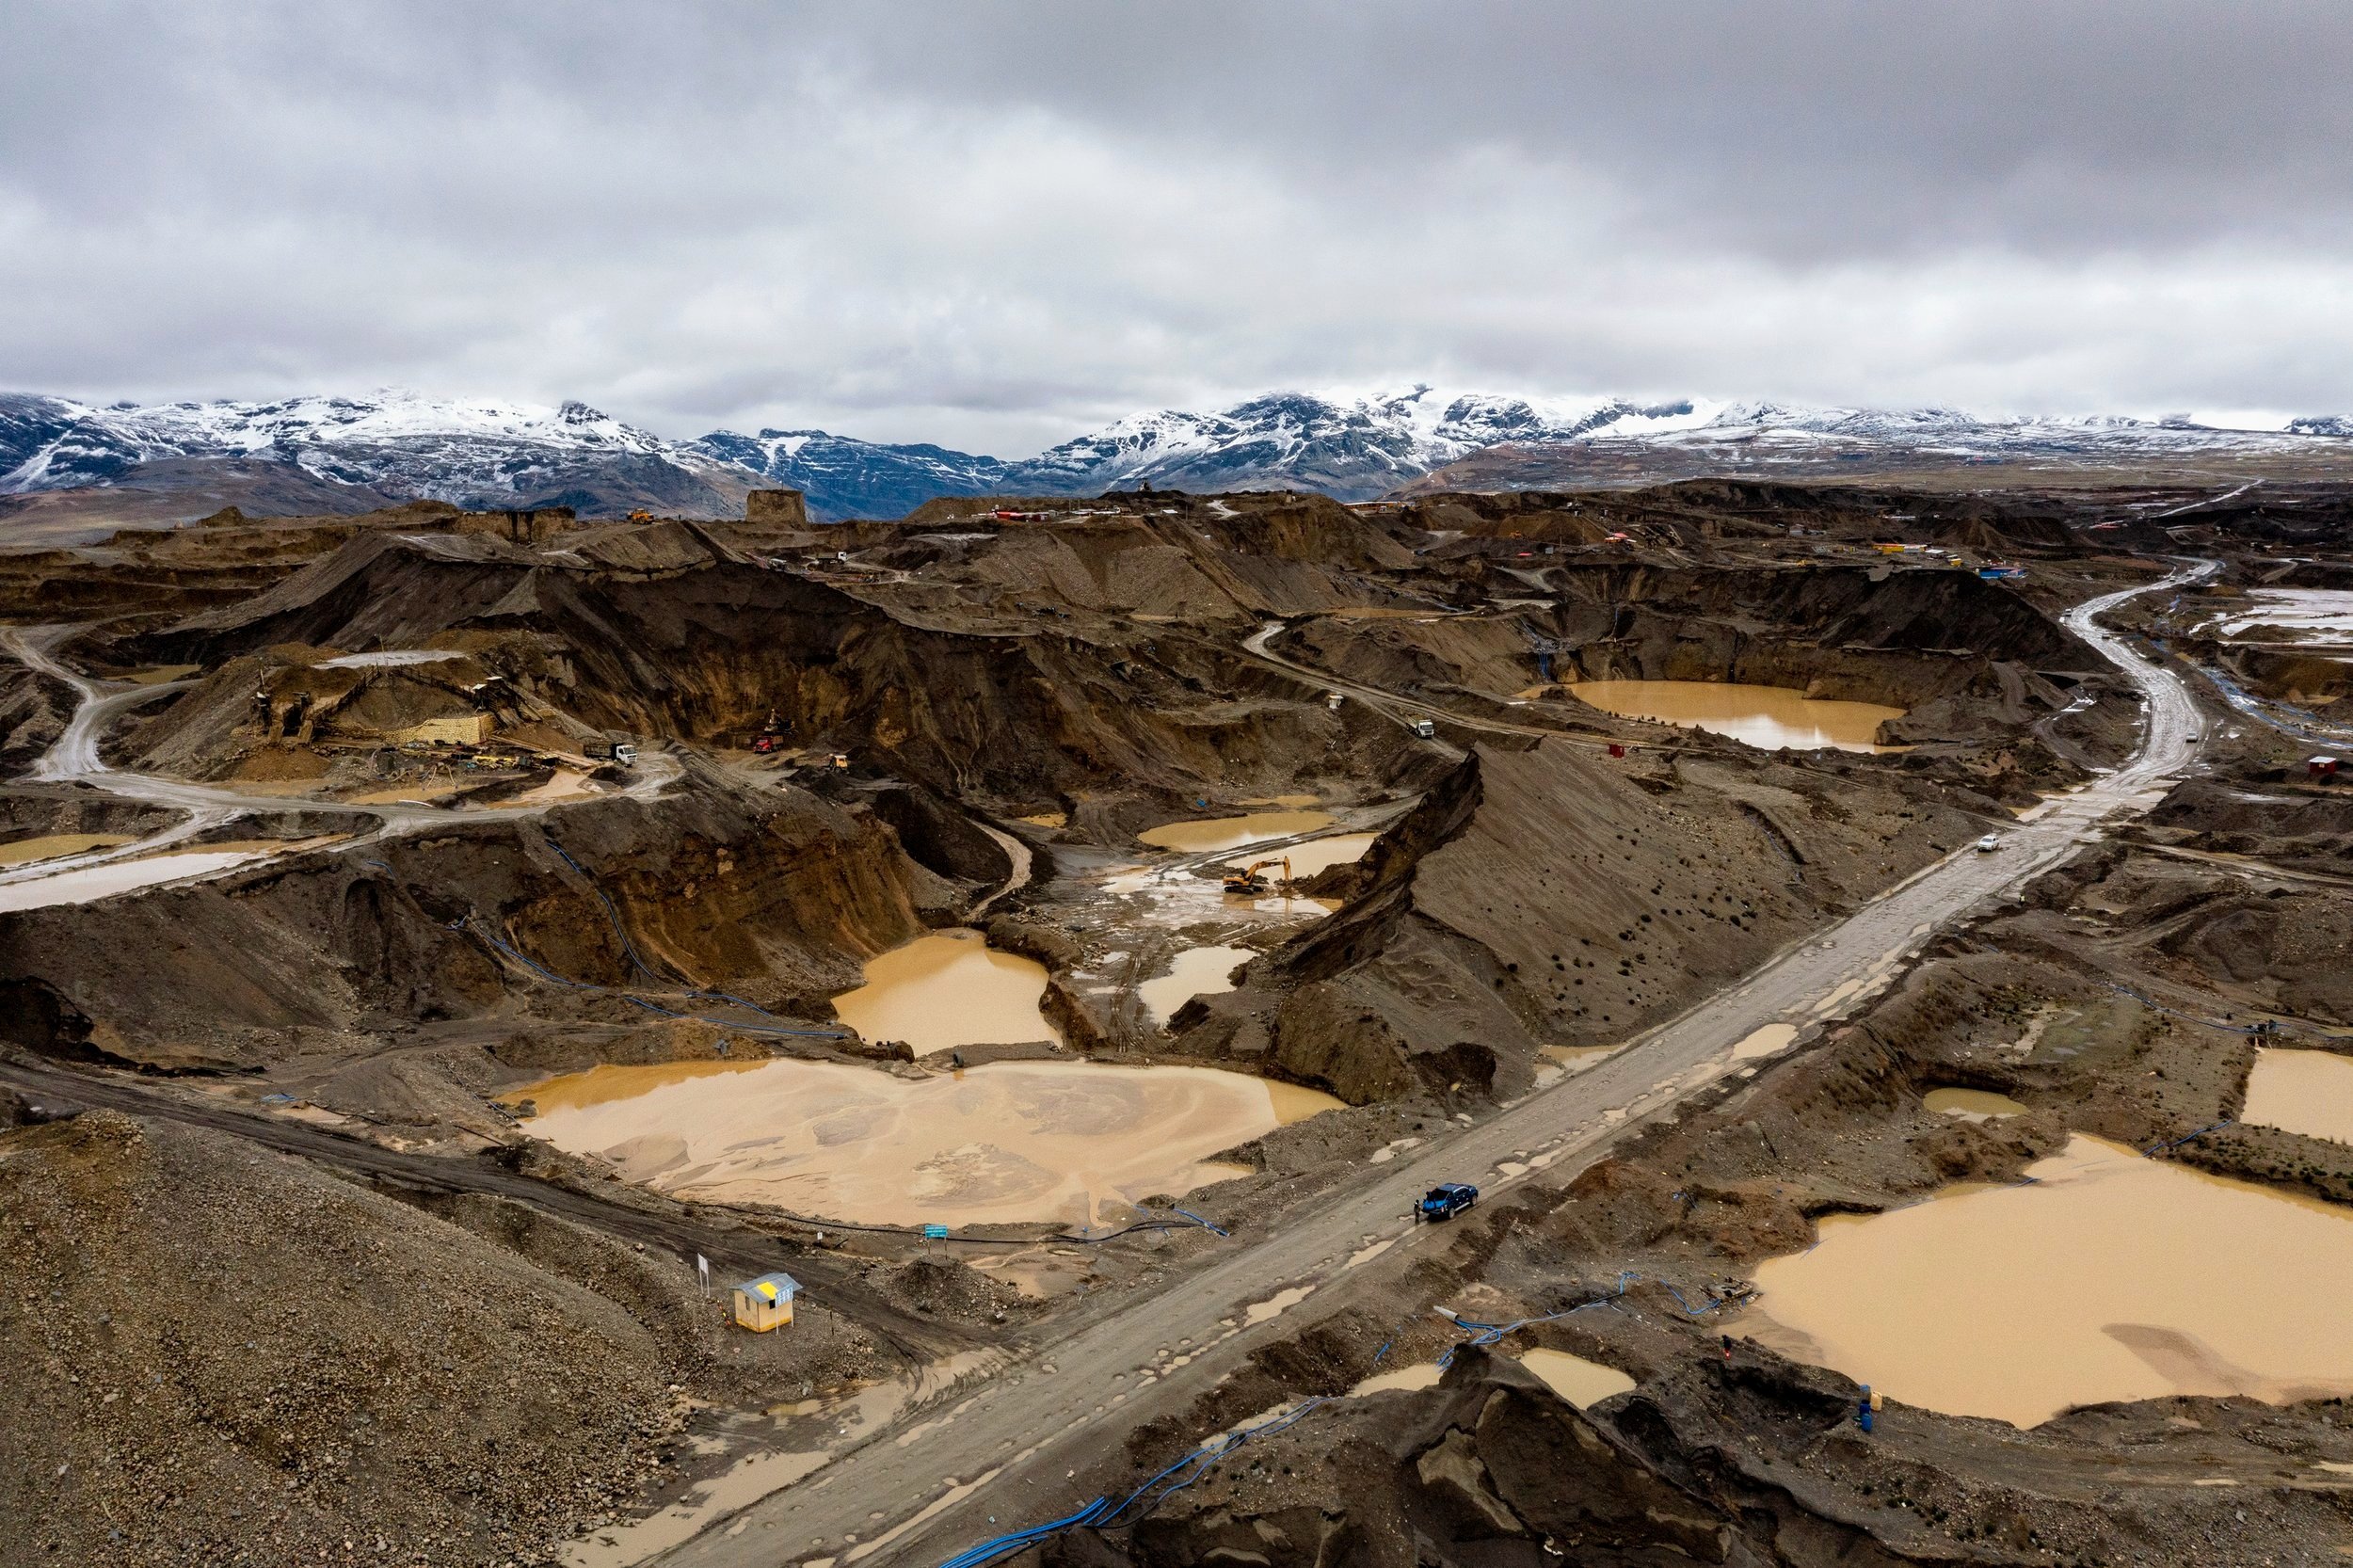 Peru's toxic mining